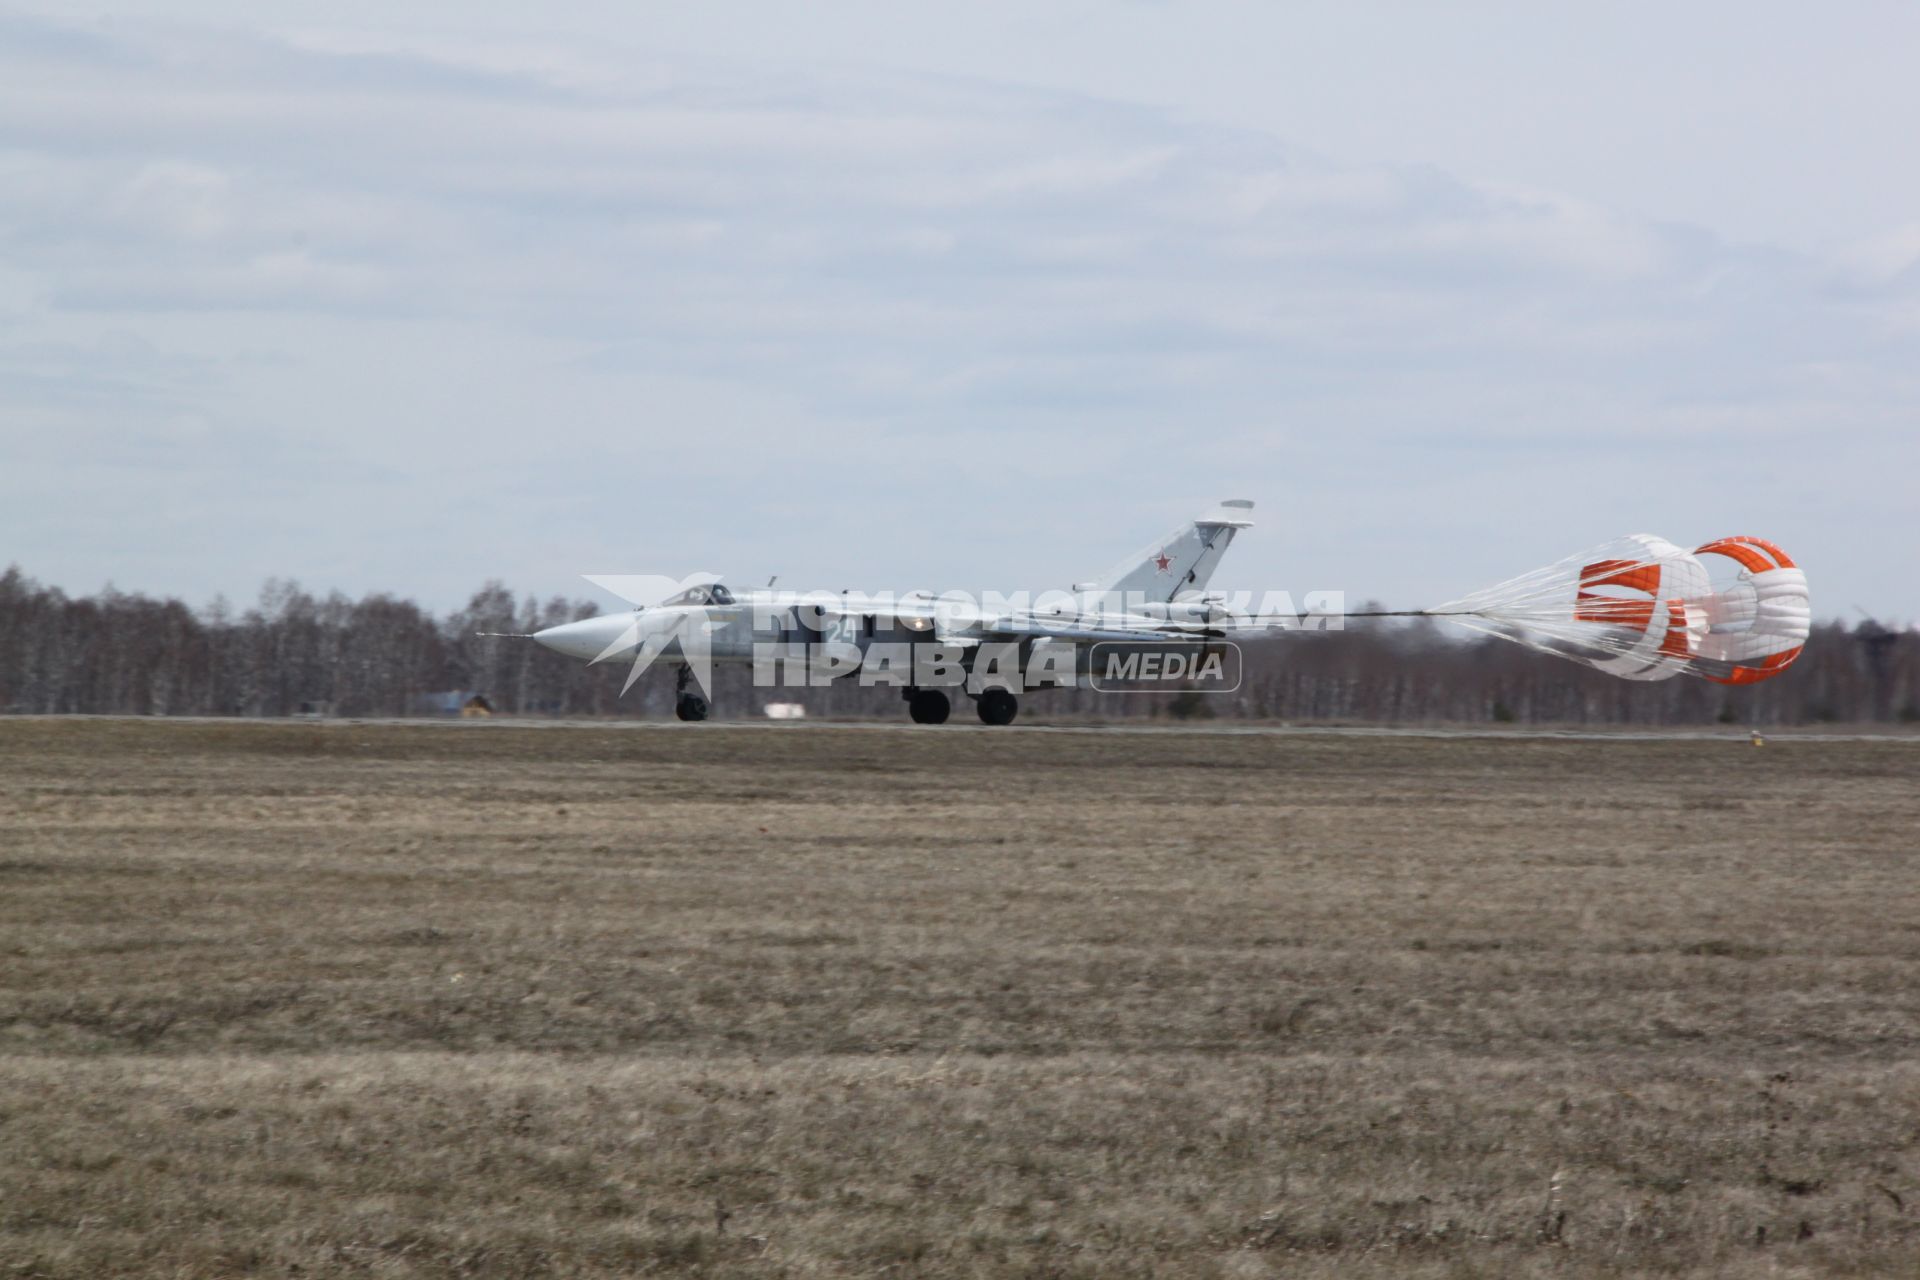 Самолет СУ-24М совершает посадку с применением парашютно-тормозной системы.